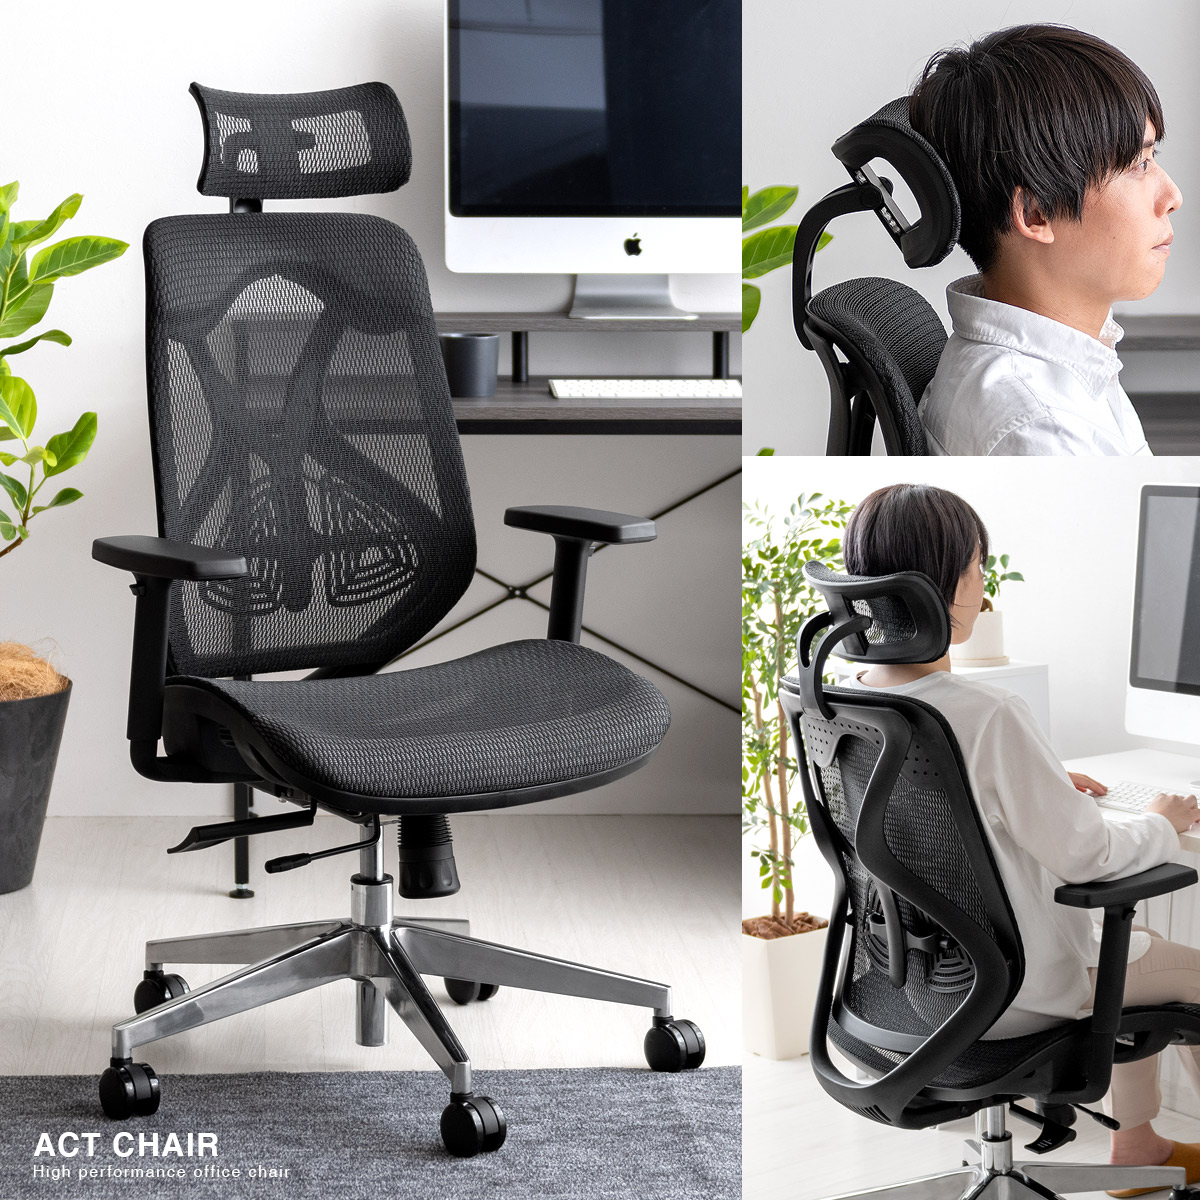 デスクチェア Act Chair アクトチェア ヘッドレスト付きタイプ 北欧インテリア 家具の通販エア リゾーム